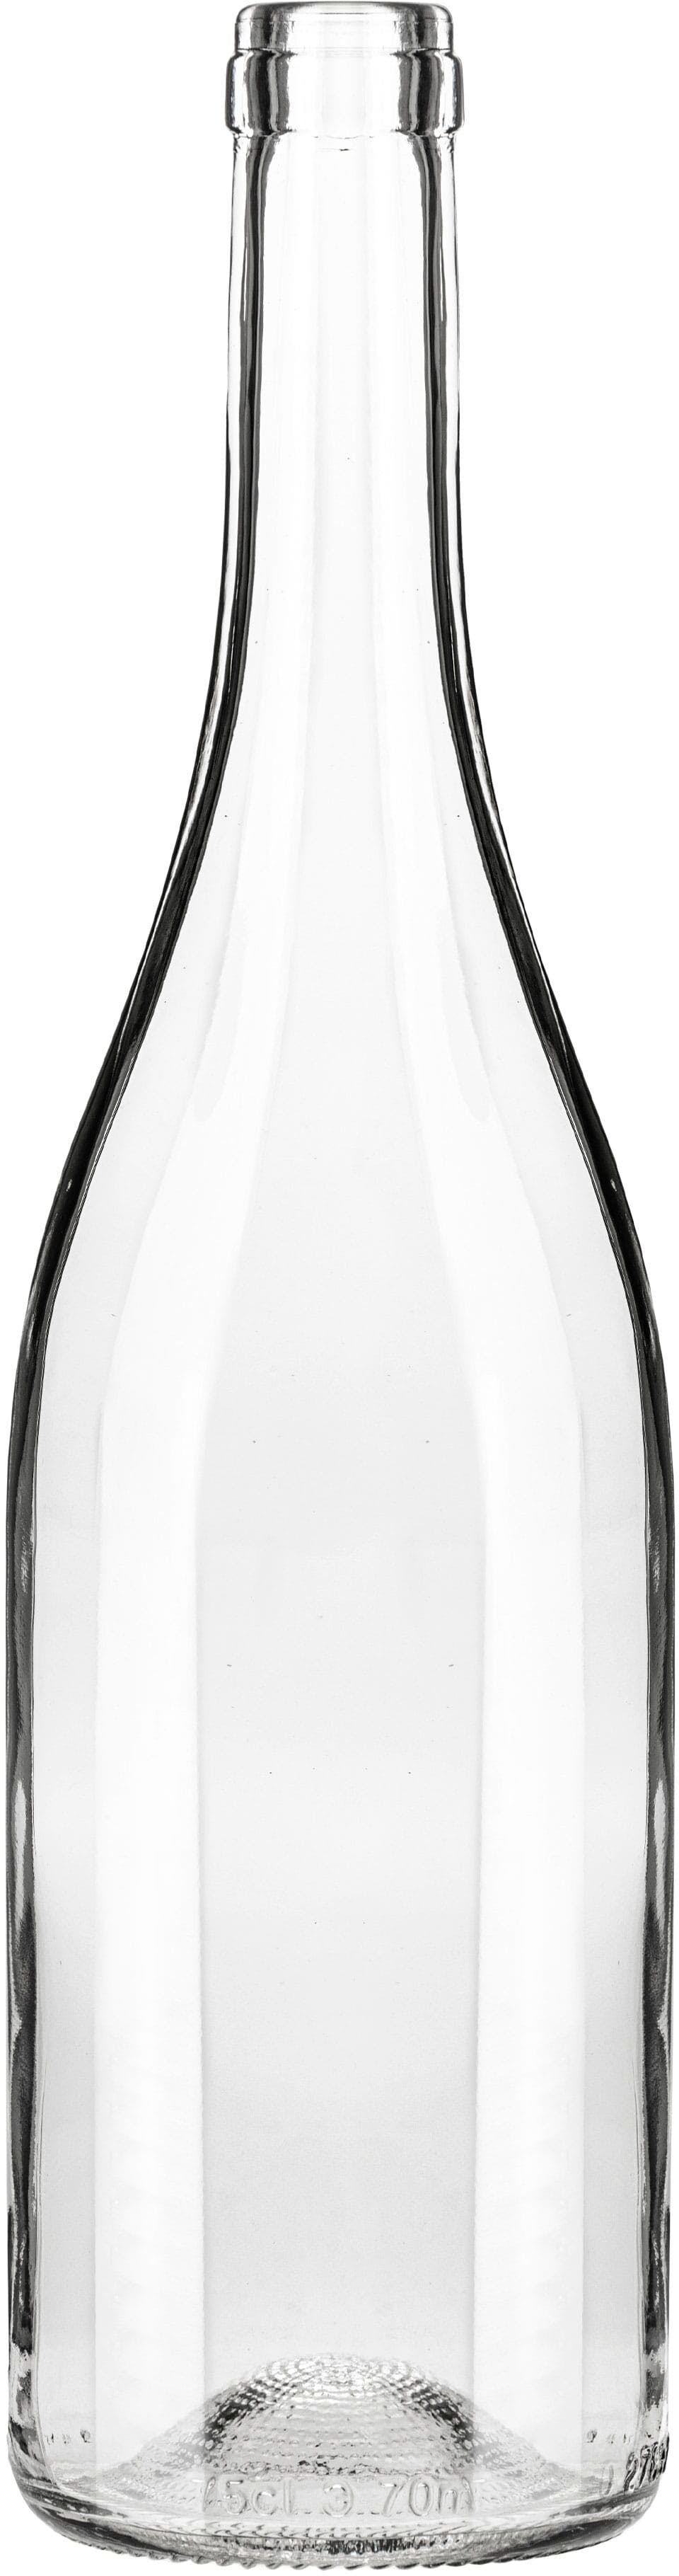 Flasche NUOVA  750 ml BG-Korken